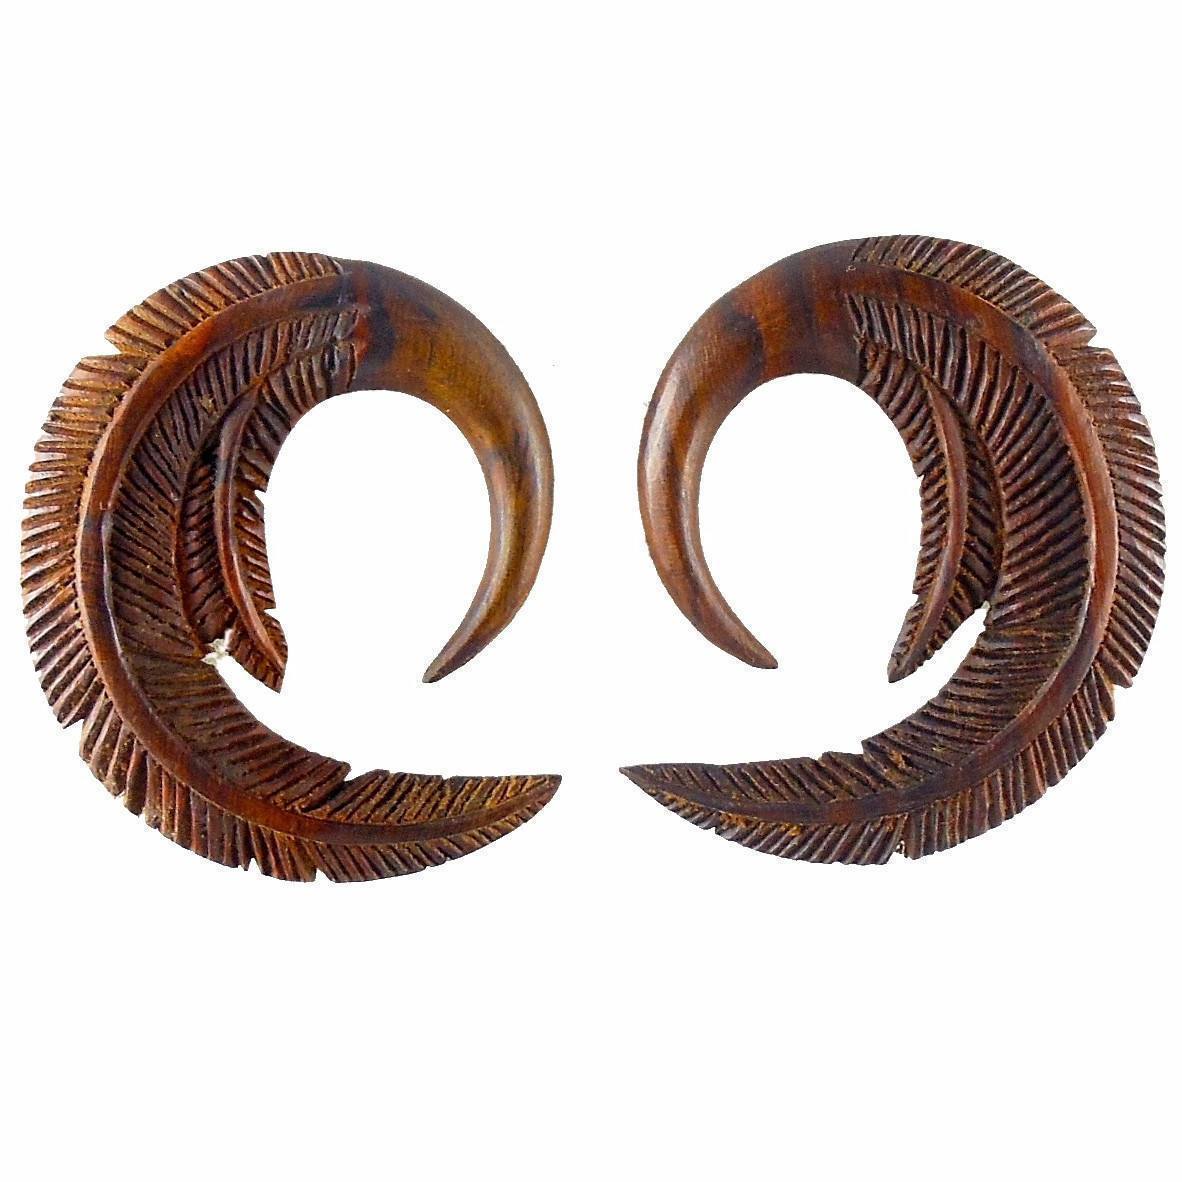 Gauge Earrings :|: Feather. Tropical Wood 2g gauge earrings.